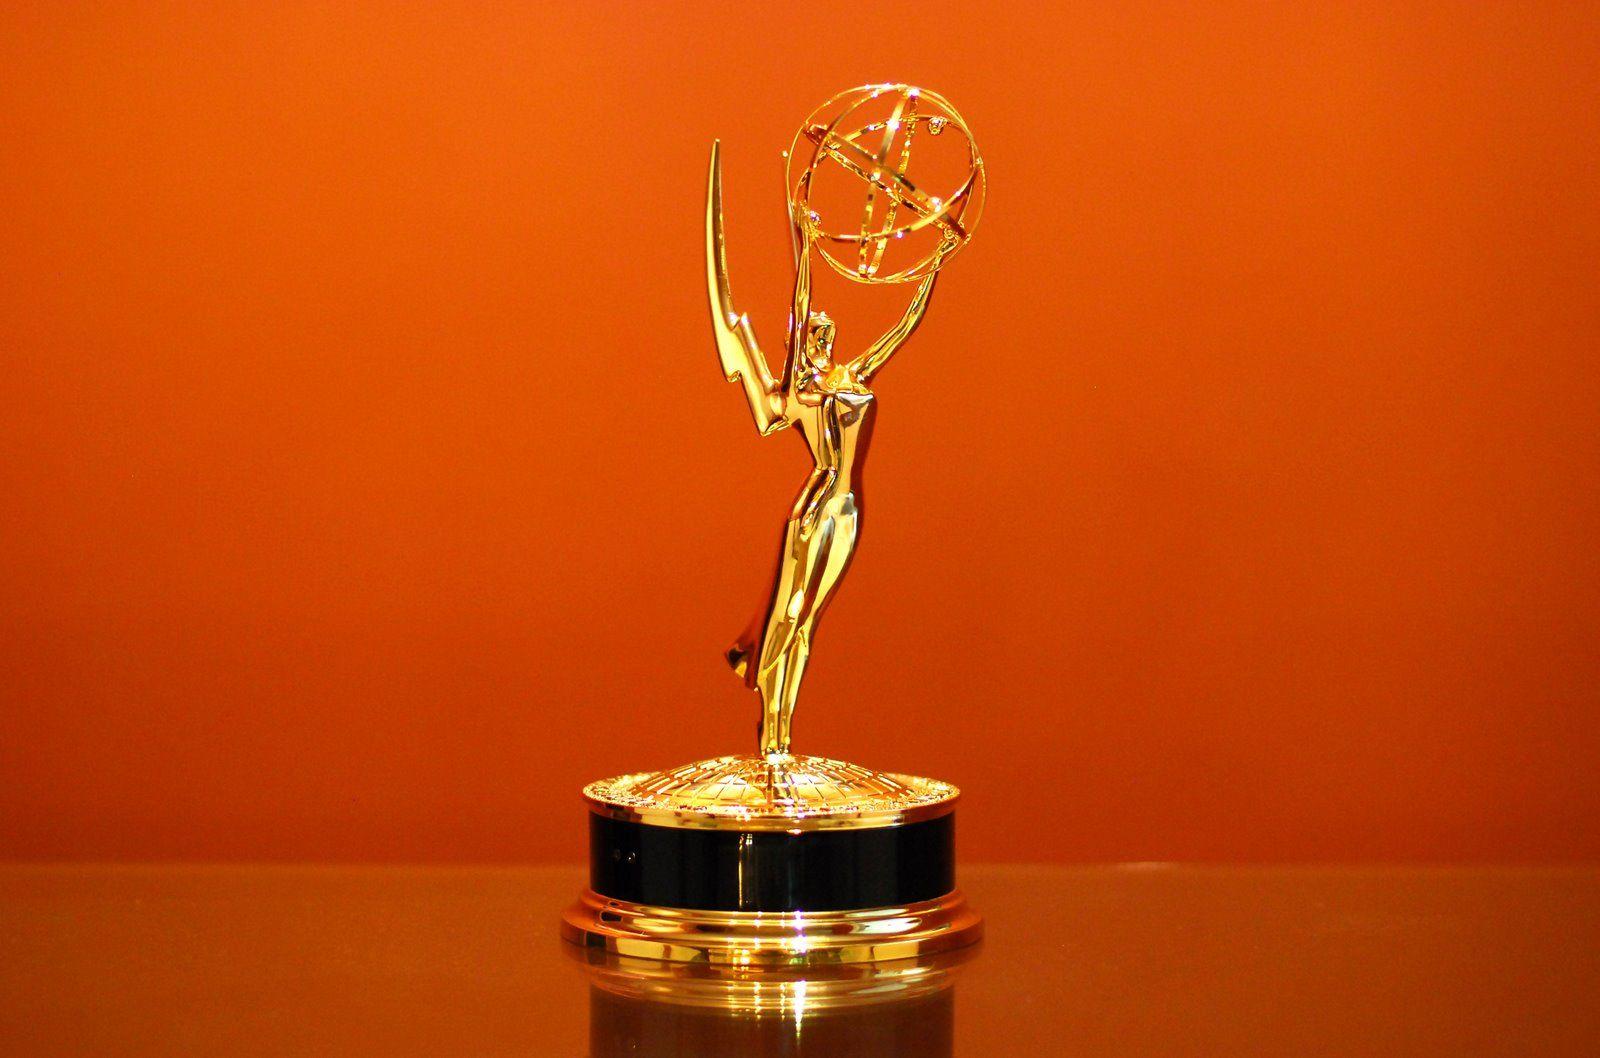 1600x1058px 145.97 KB Emmy Awards